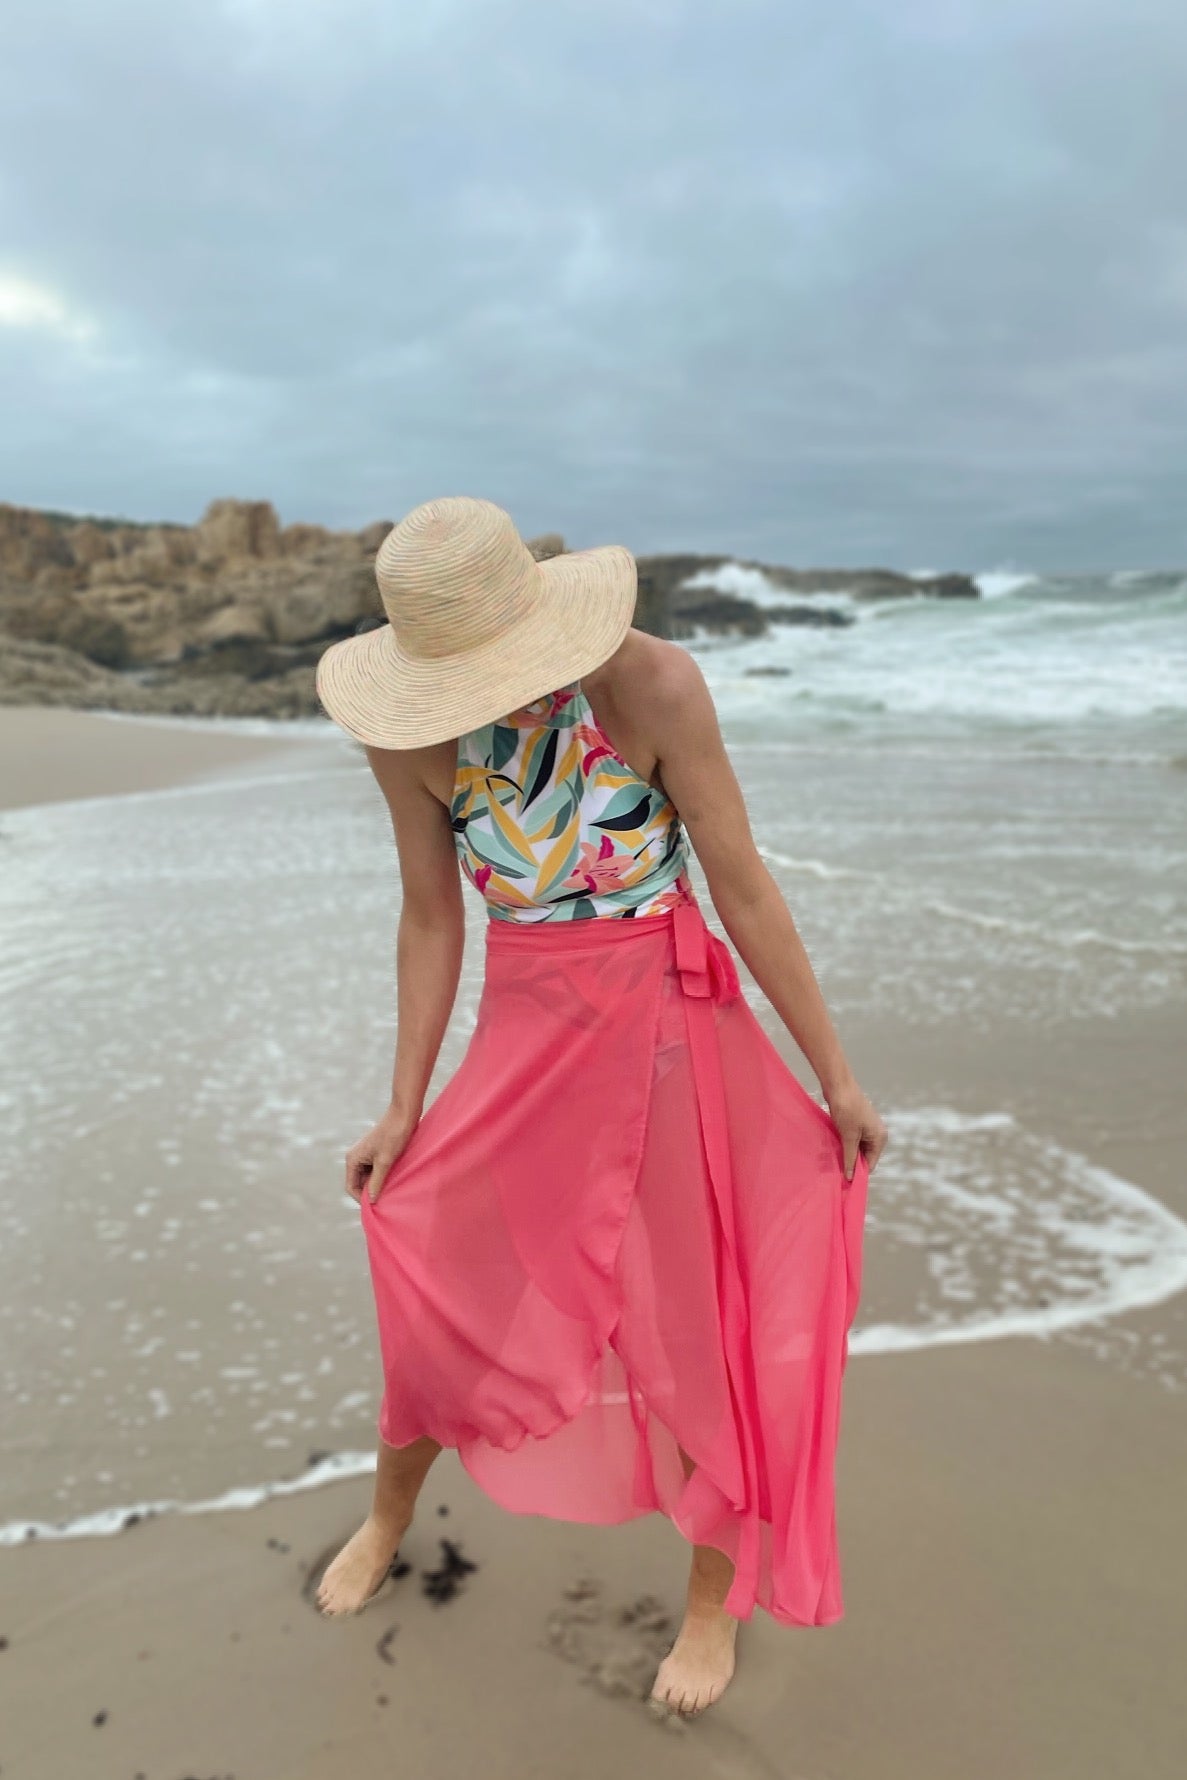 Coral Beach Skirt/Dress